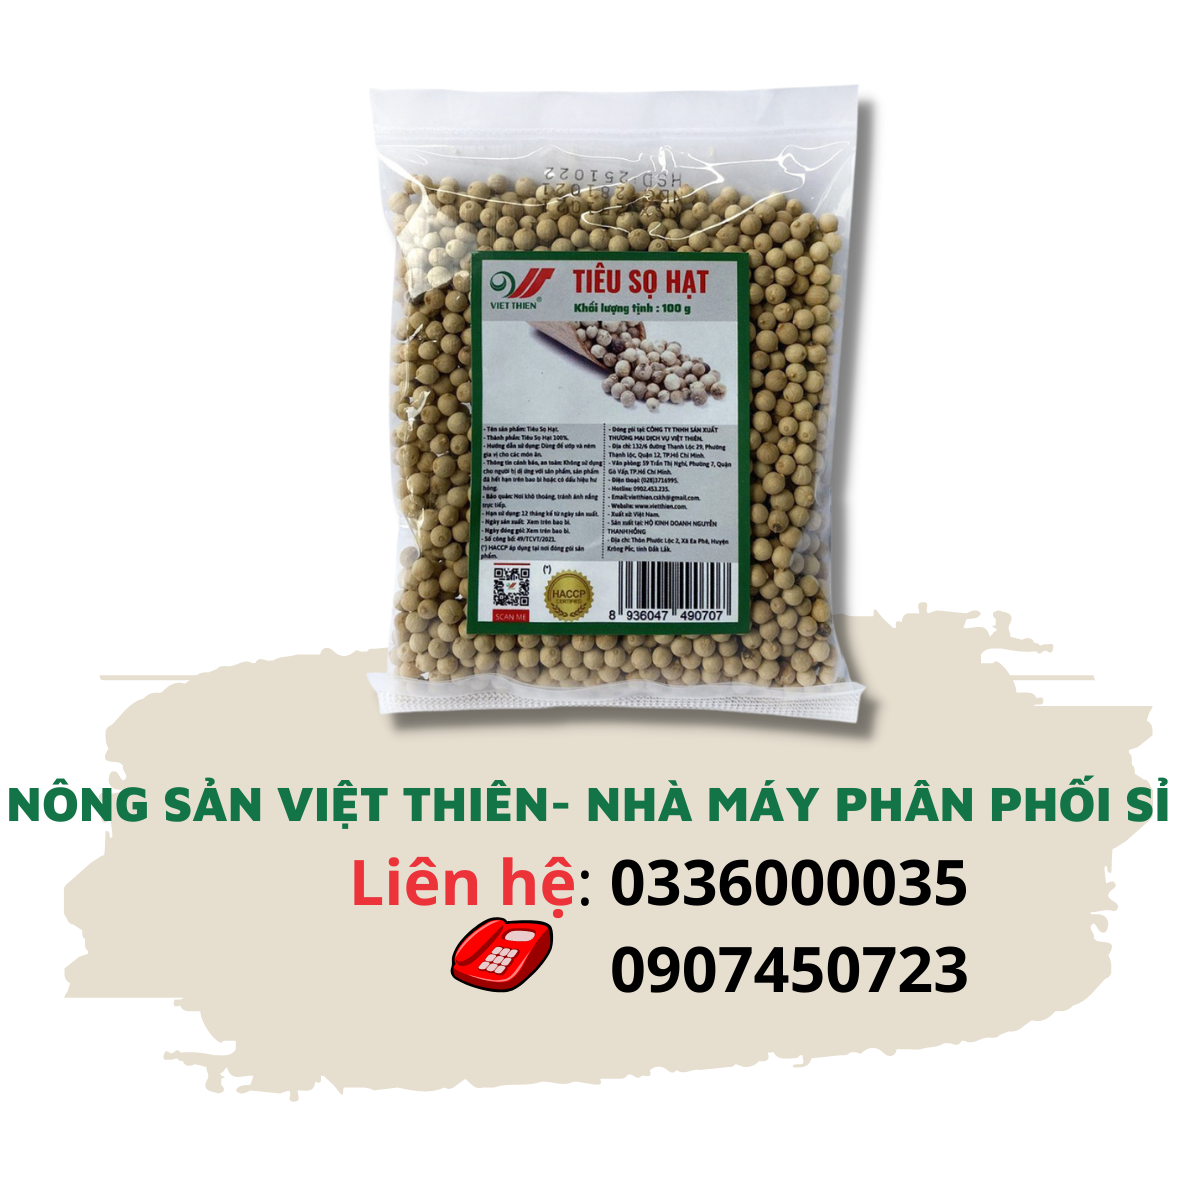 Tiêu Sọ Việt Thiên 100g, nhà máy sản xuất và phân phối nông sản Việt Thiên, giá rẻ